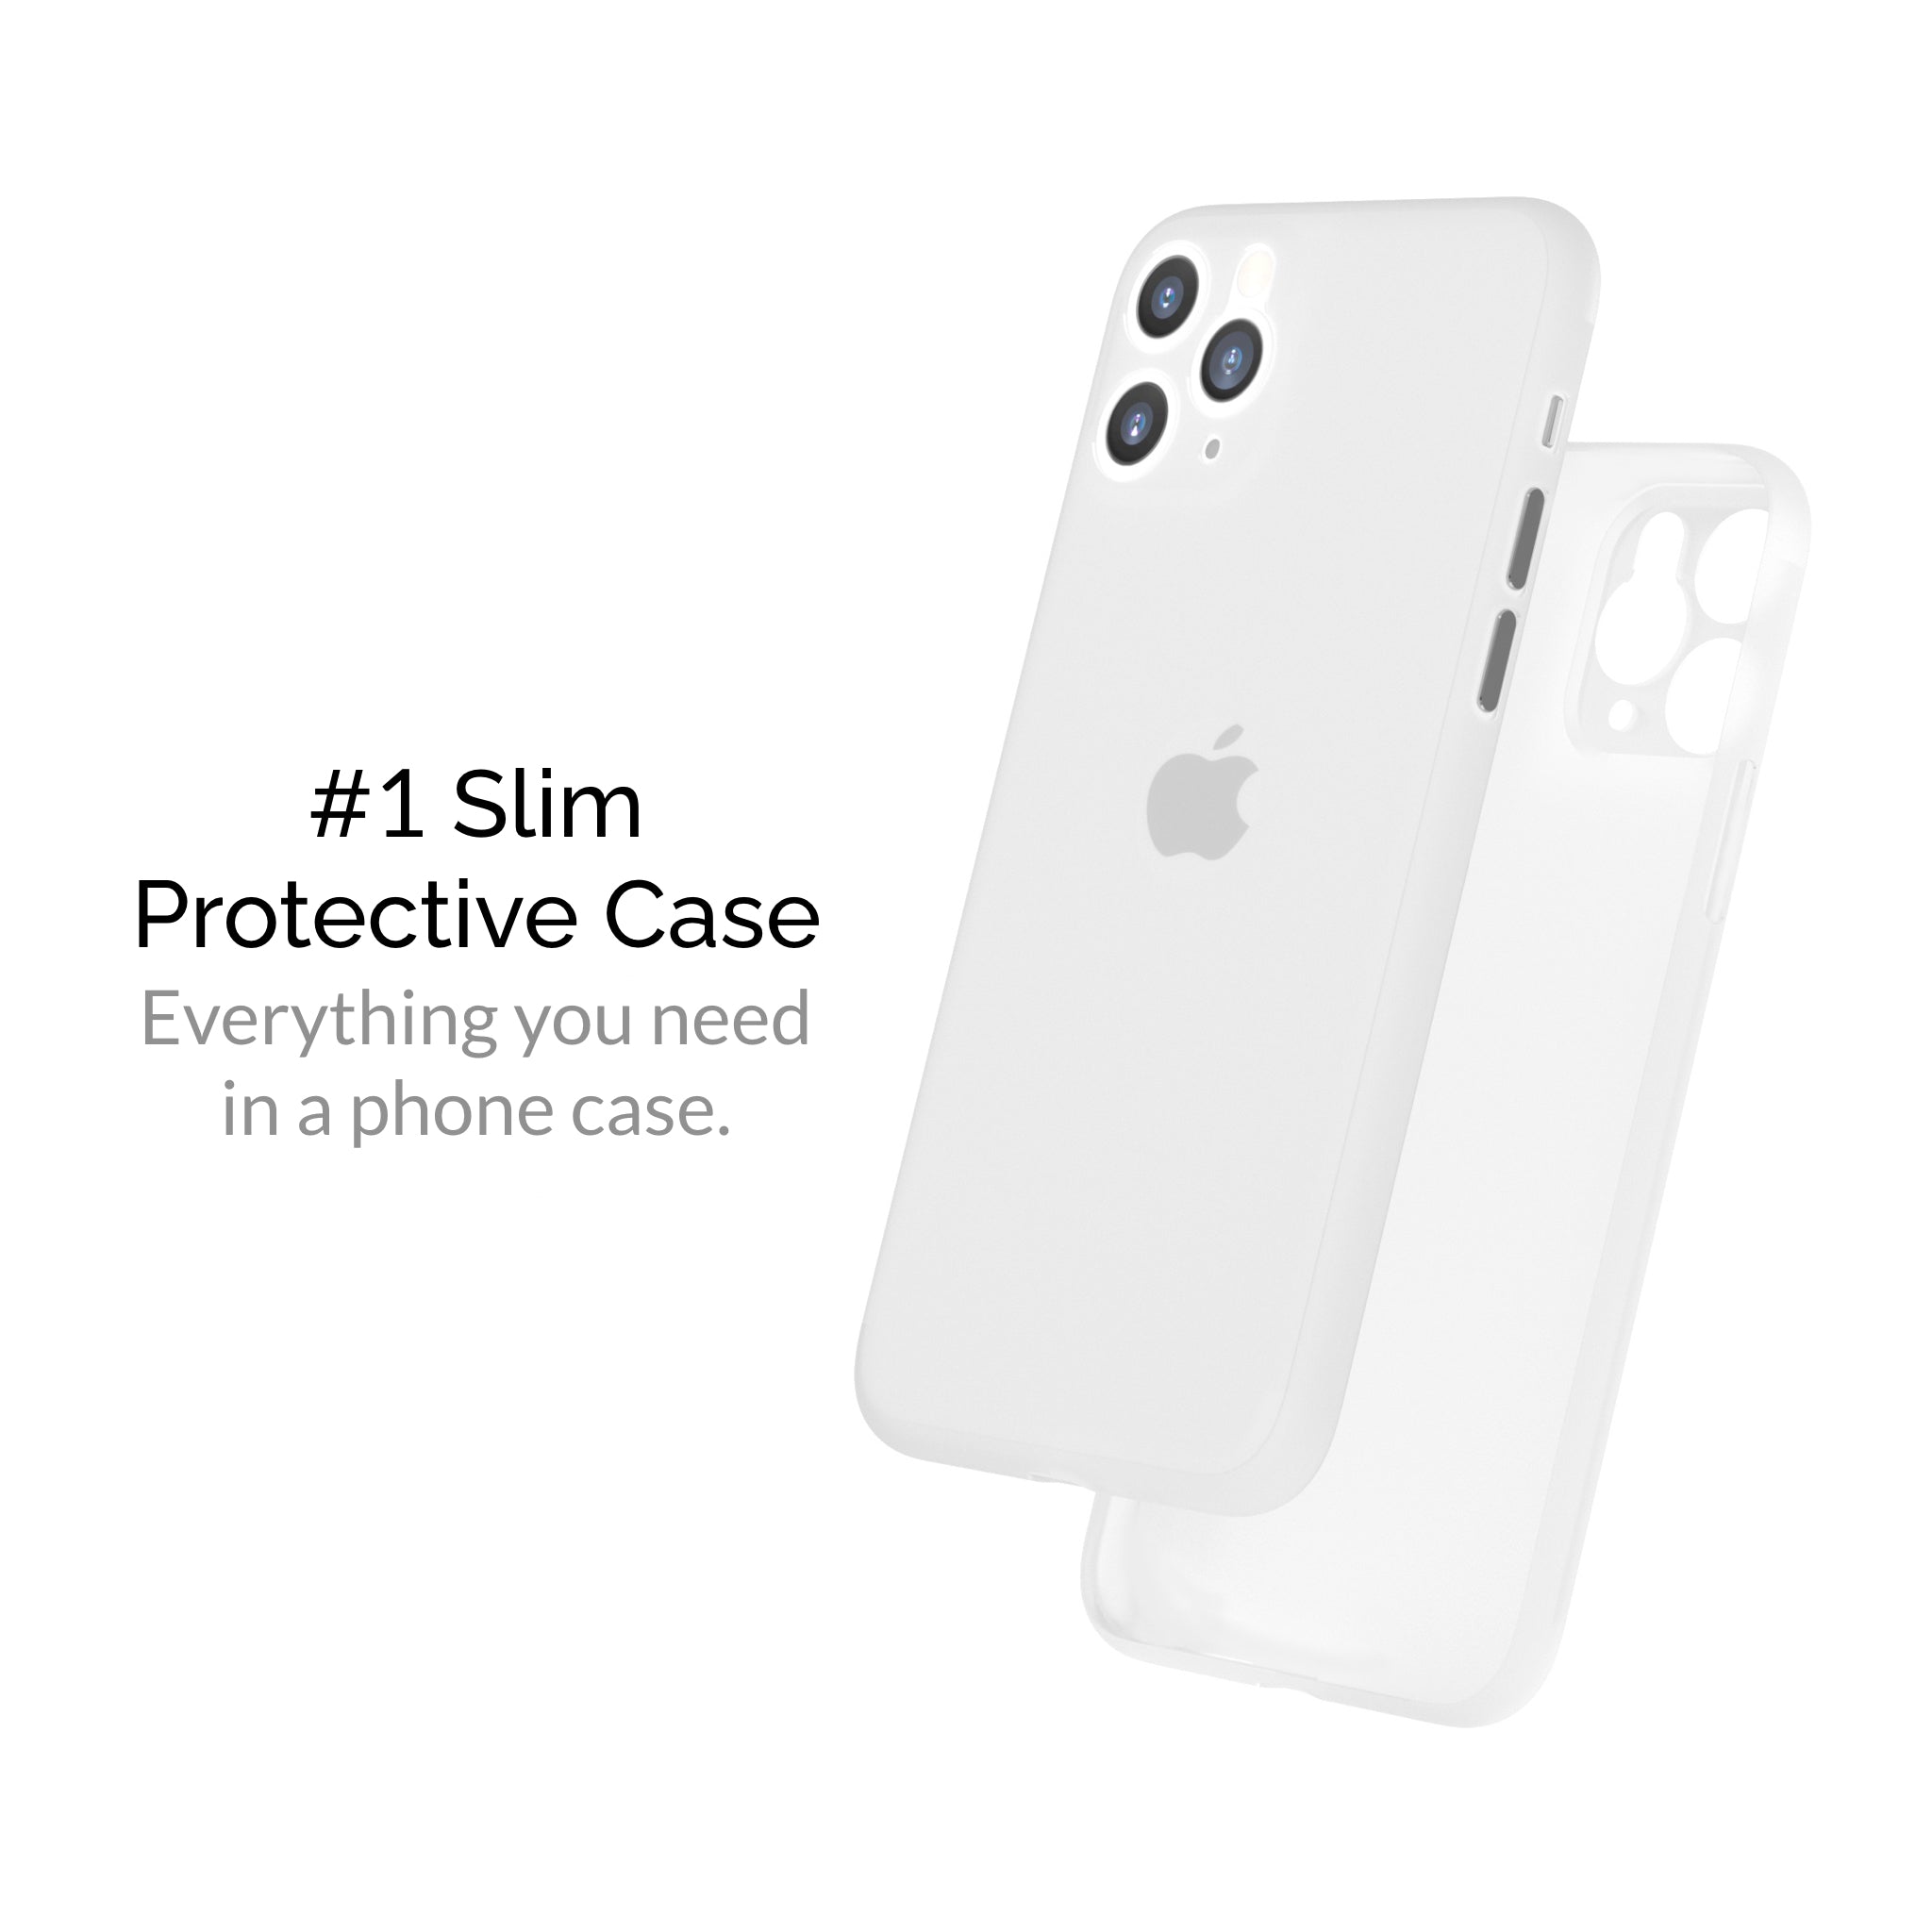 iphone 11 pro max cases, iphone 11 pro max case, slimcase iphone 11 pro max, iphone 11 pro max slimcase